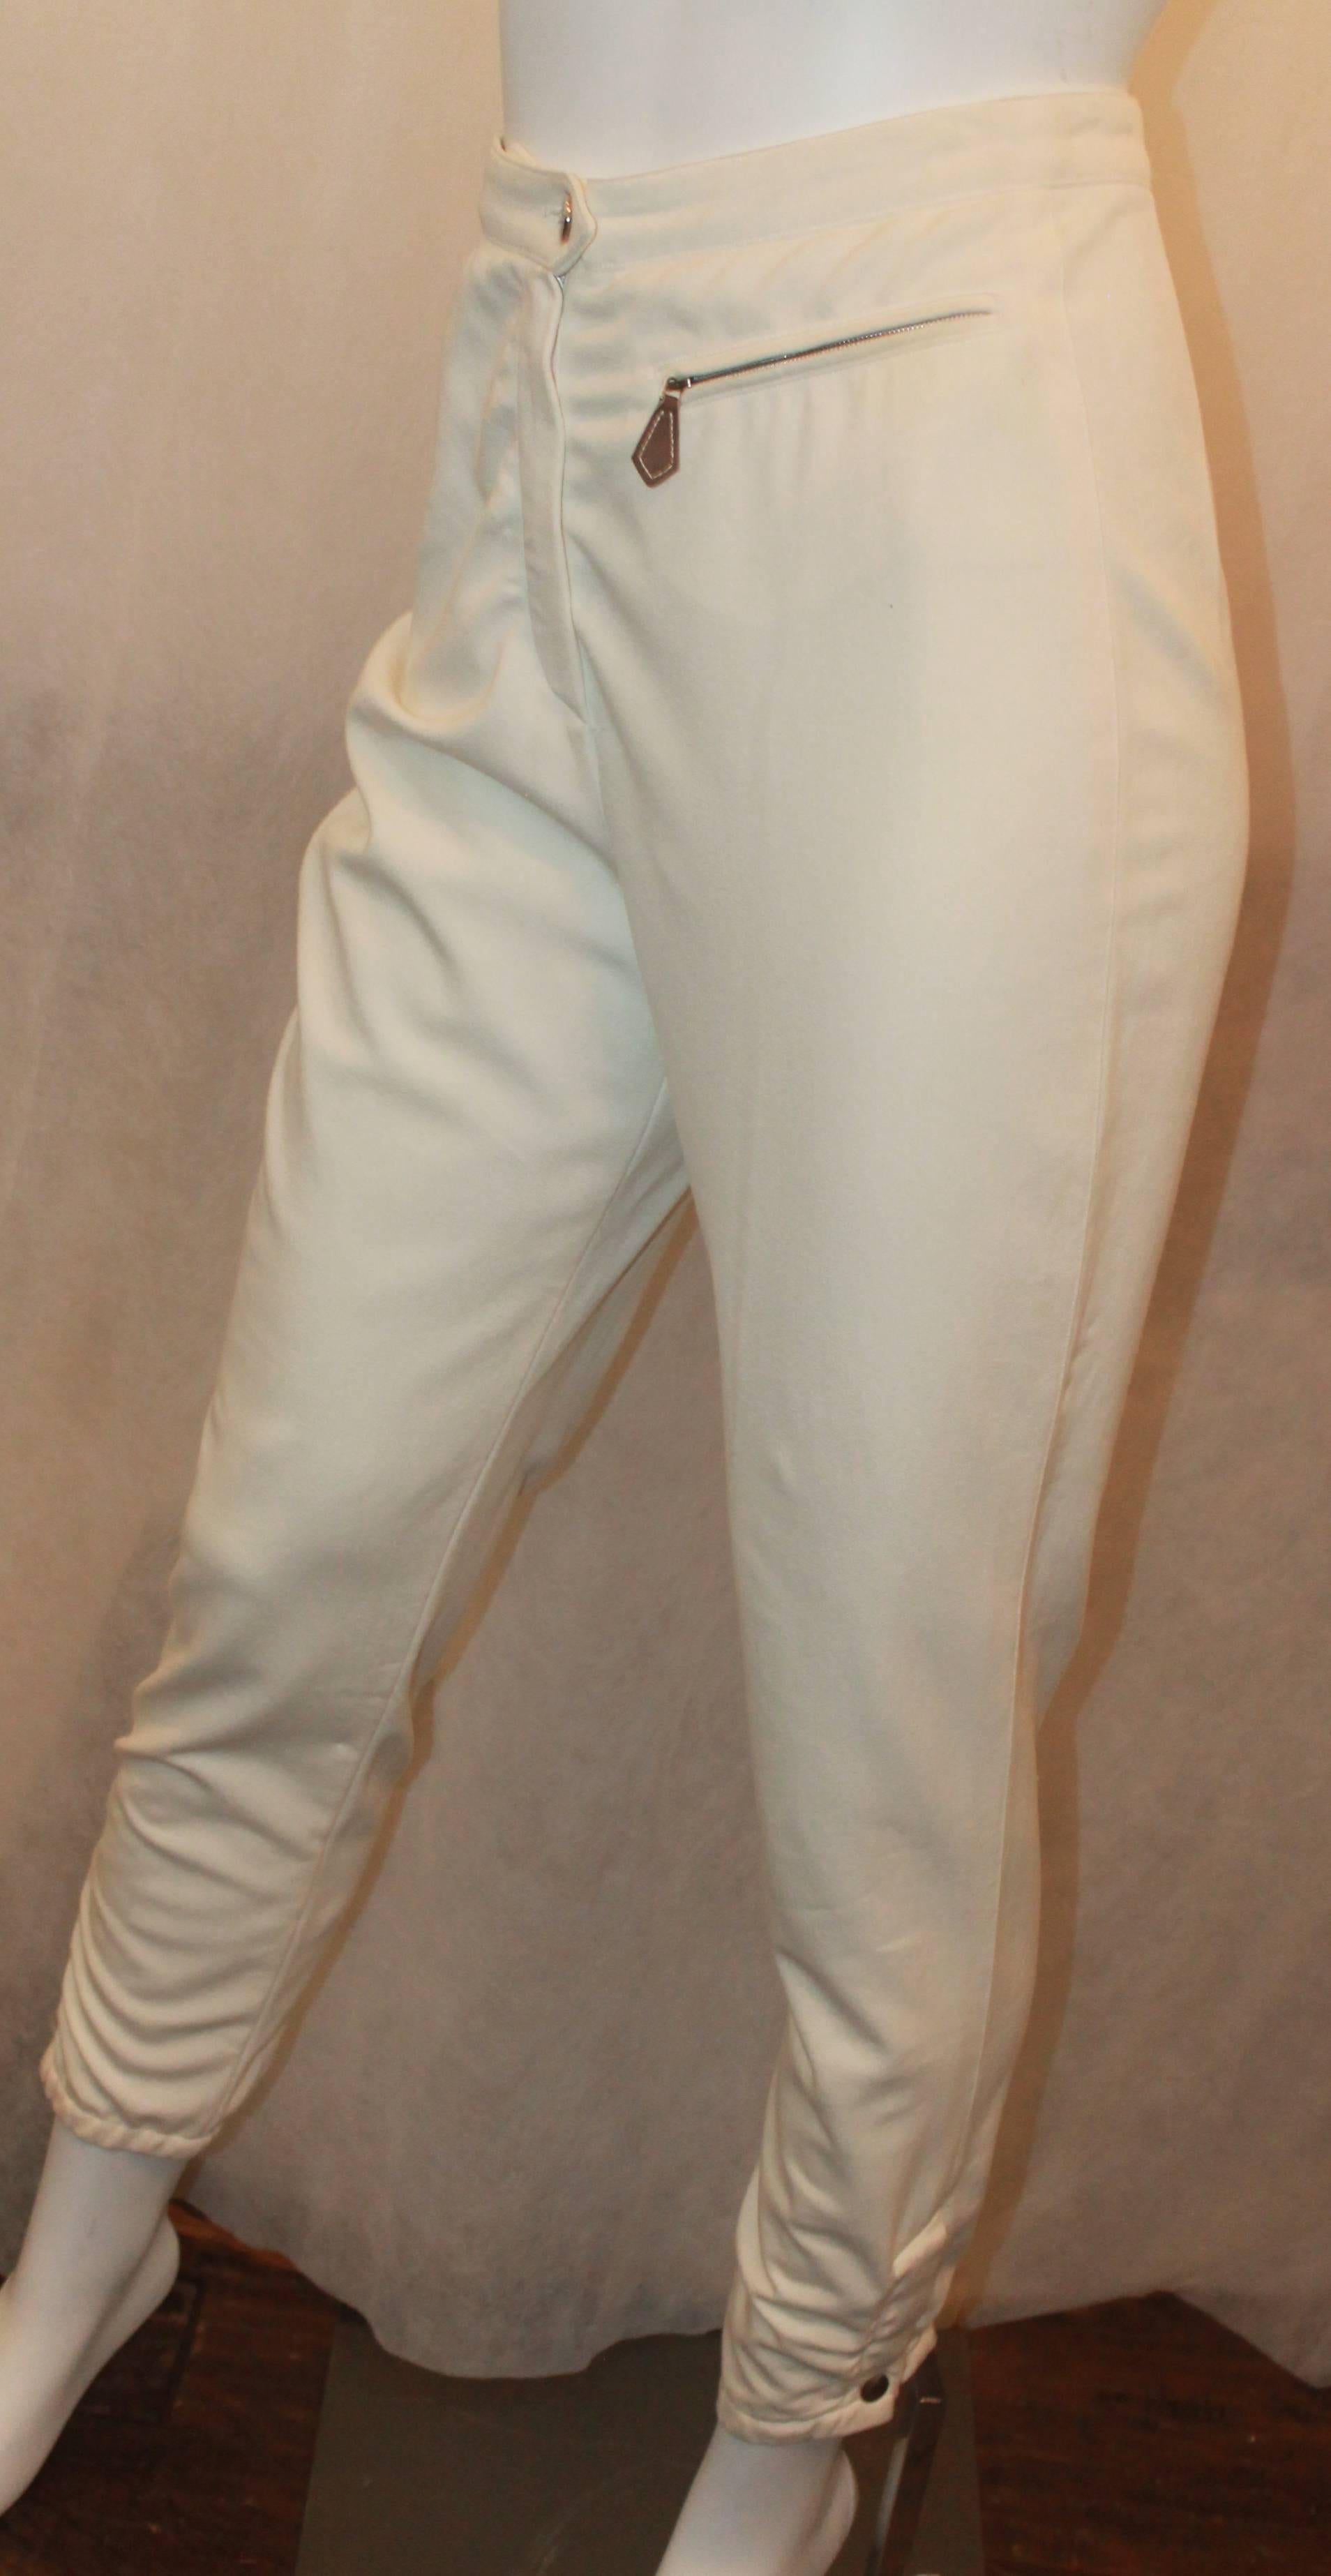 Pantalon d'équitation à taille haute Hermès Ivoire - 34 - circa 1990's. Ce pantalon est en très bon état vintage avec une usure correspondant à son âge. Ils sont dotés d'une poche zippée en cuir sur le bas. 

Mesures :
Taille - 25-26